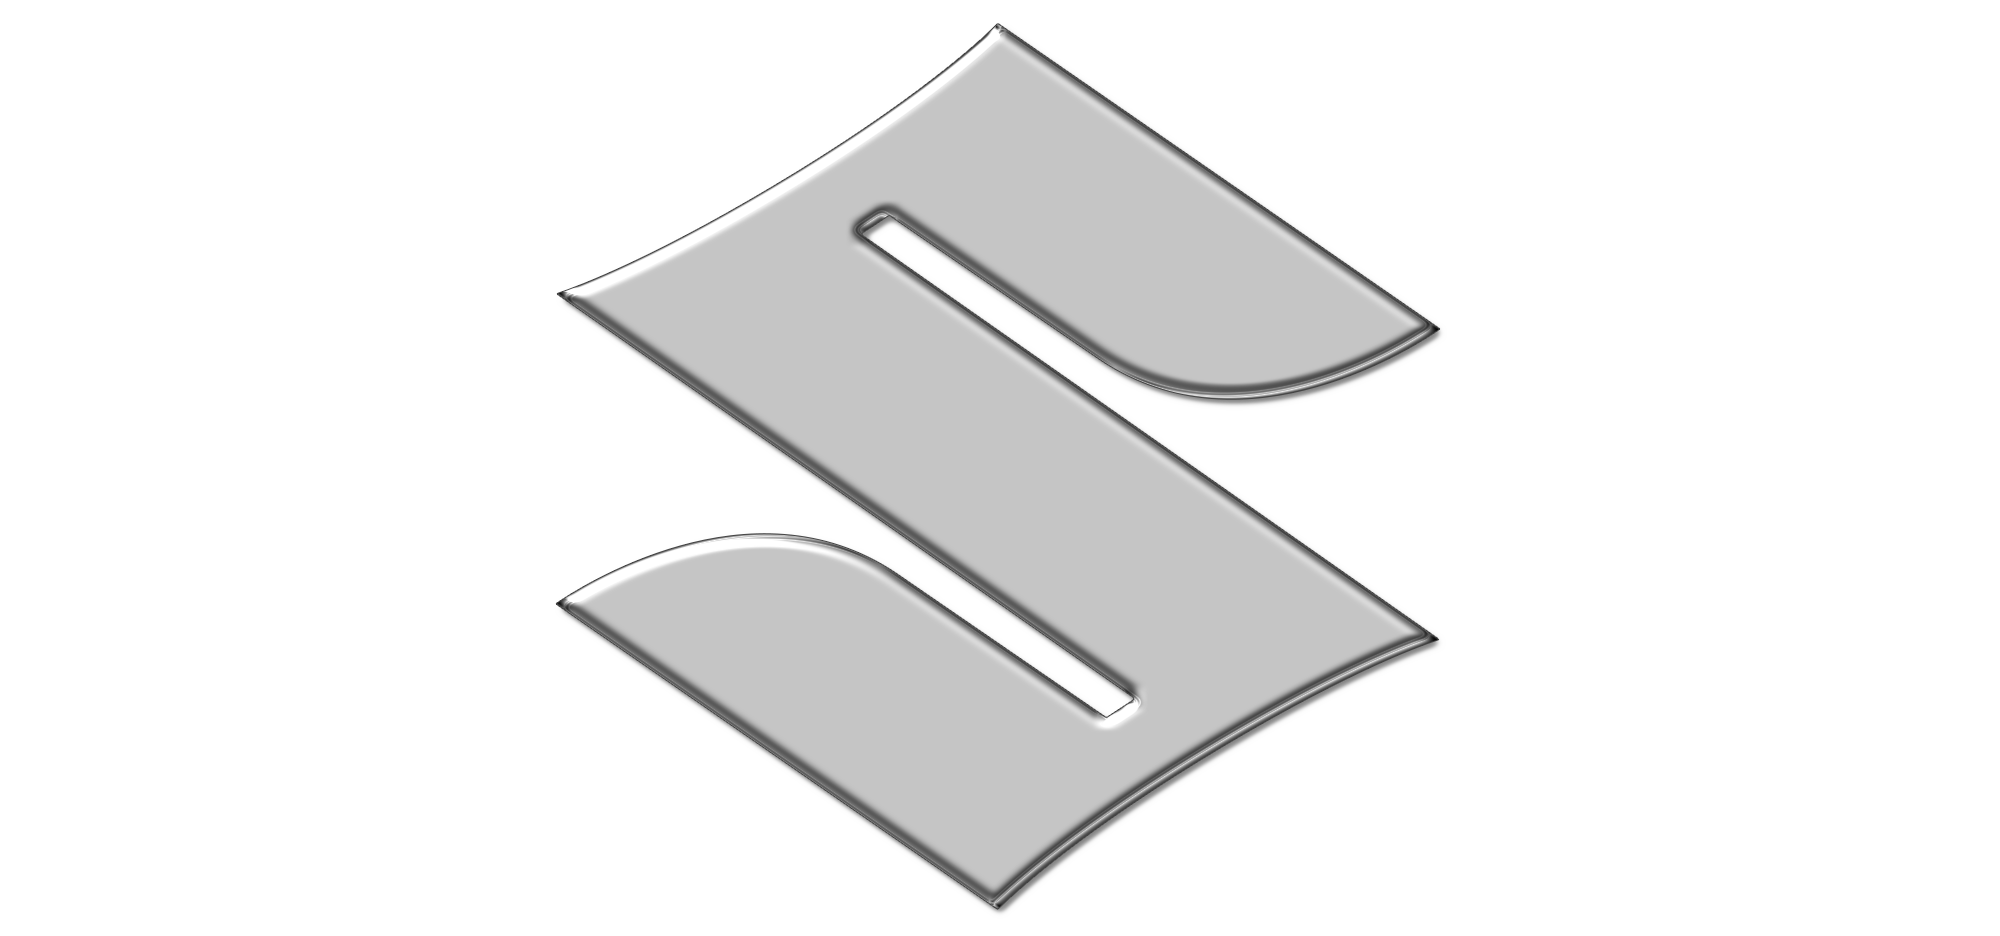 Suzuki simbolo immagine PNG gratuita